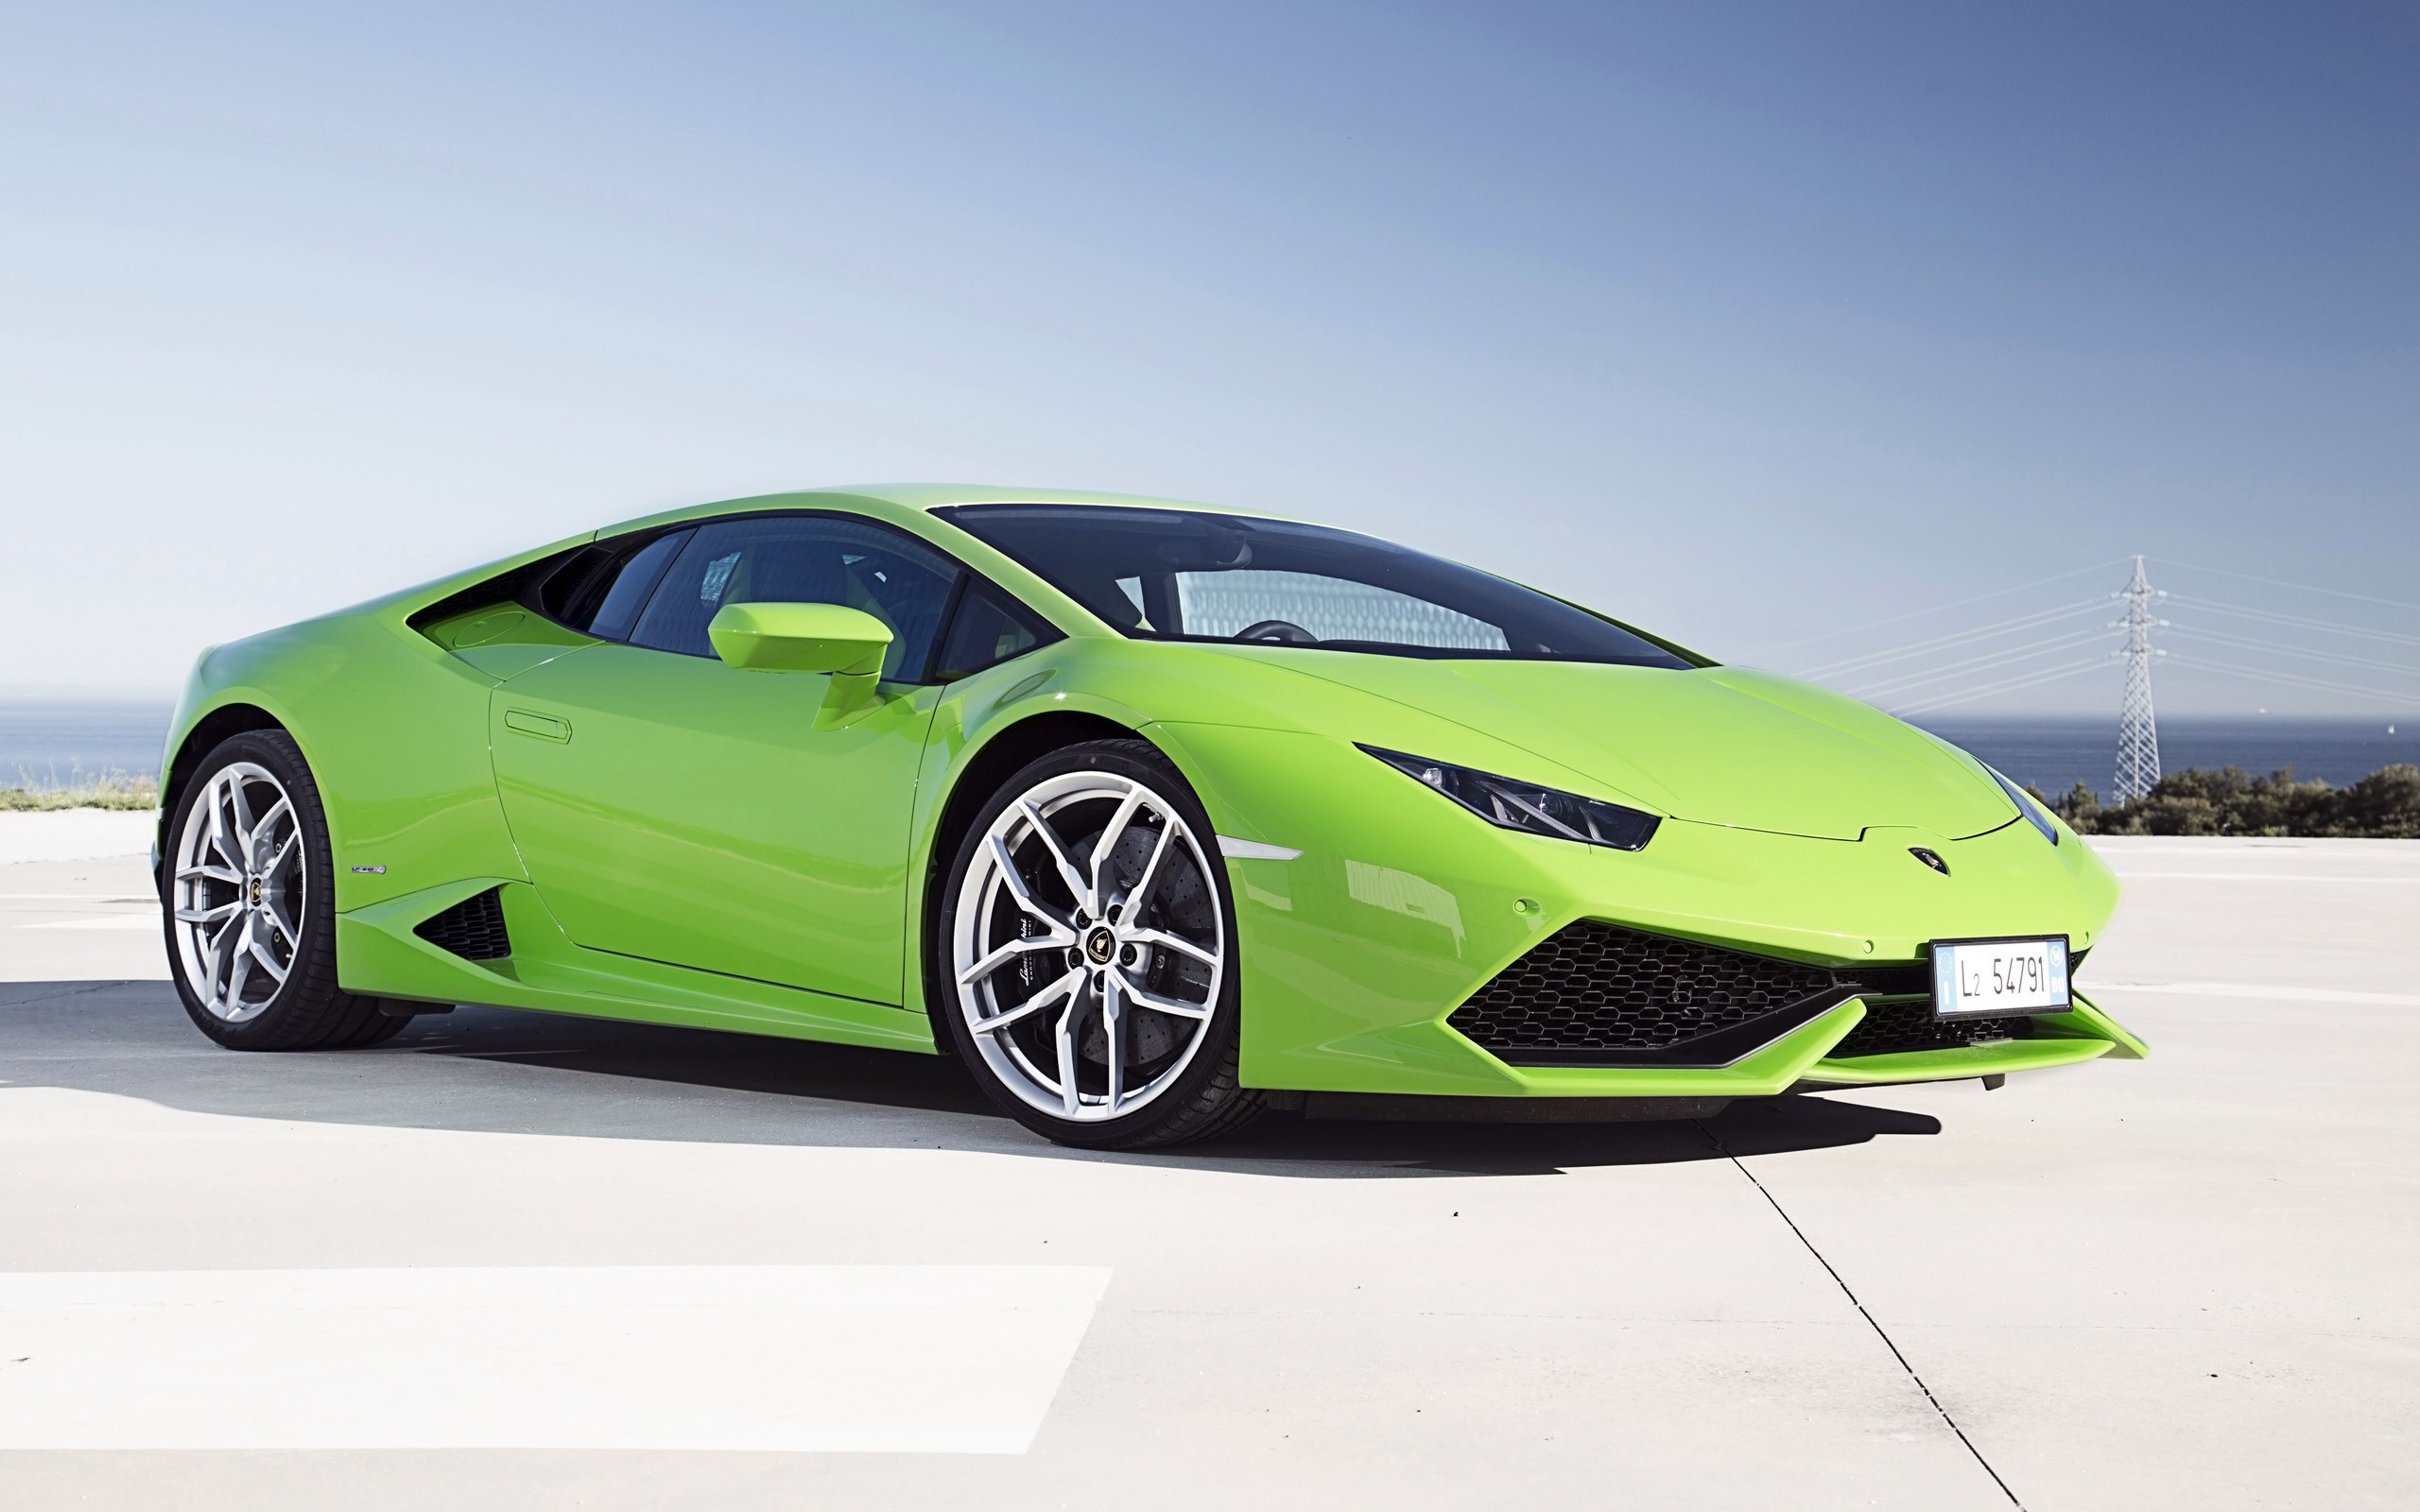 Lamborghini Huracan wallpaper ·① ① Download free cool full HD